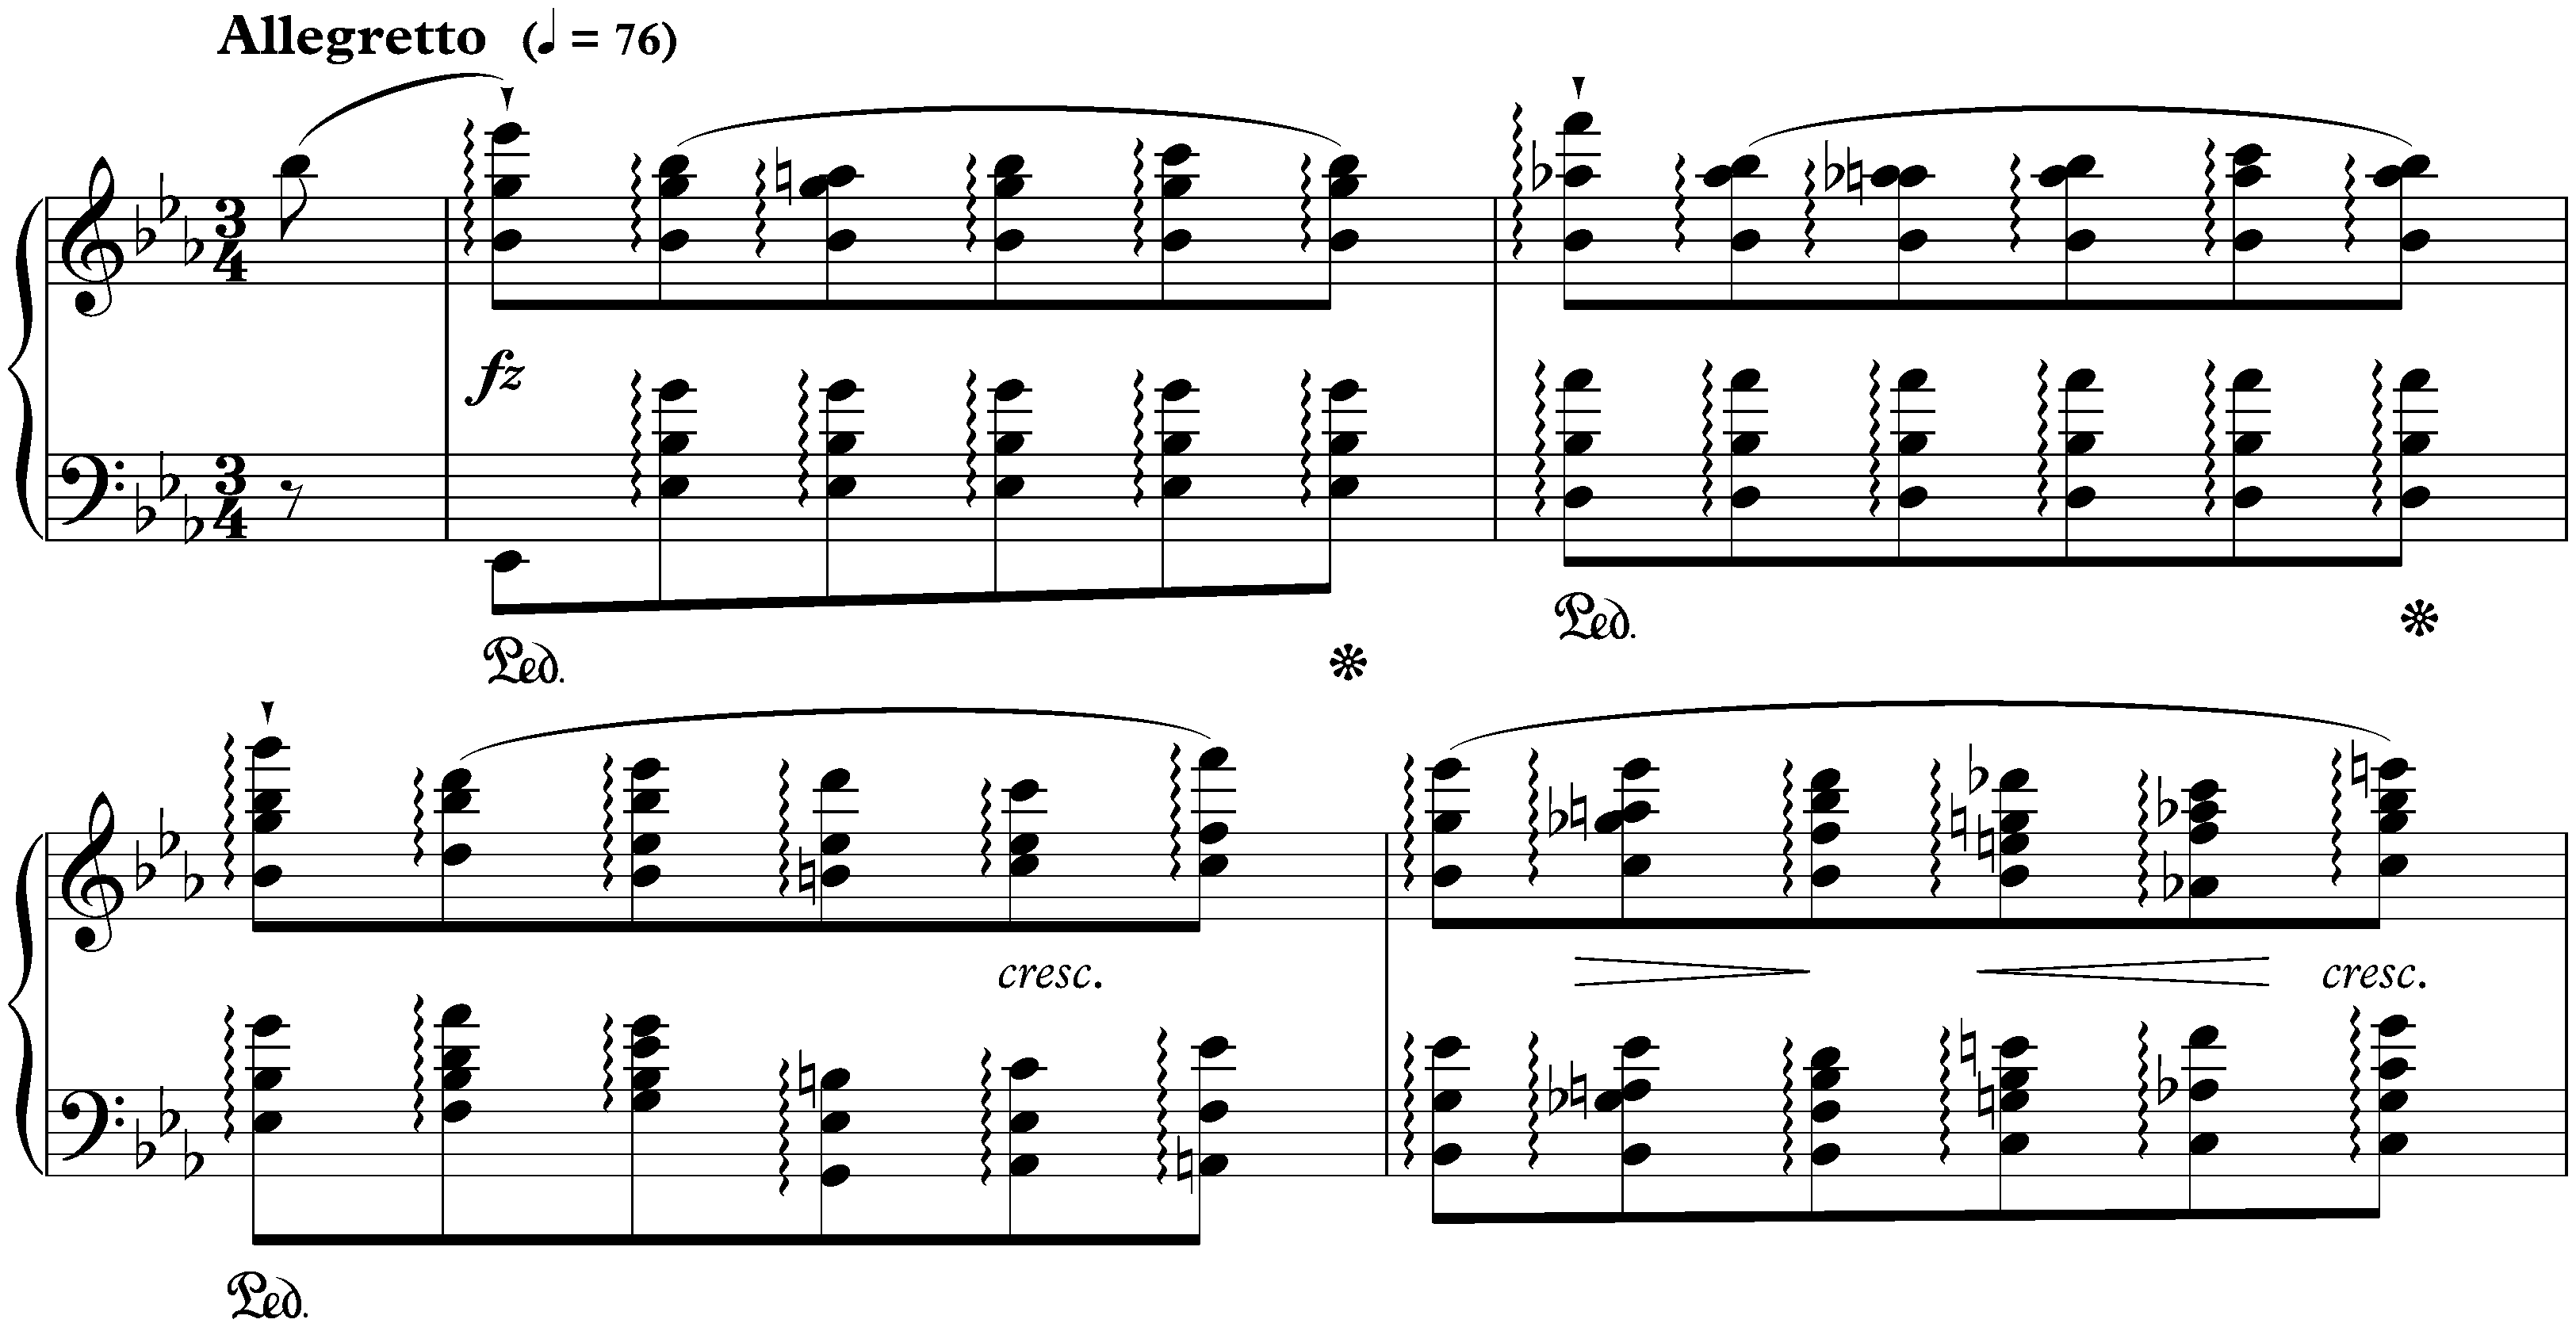 Twelve Études, op. 10; 11. E-flat major